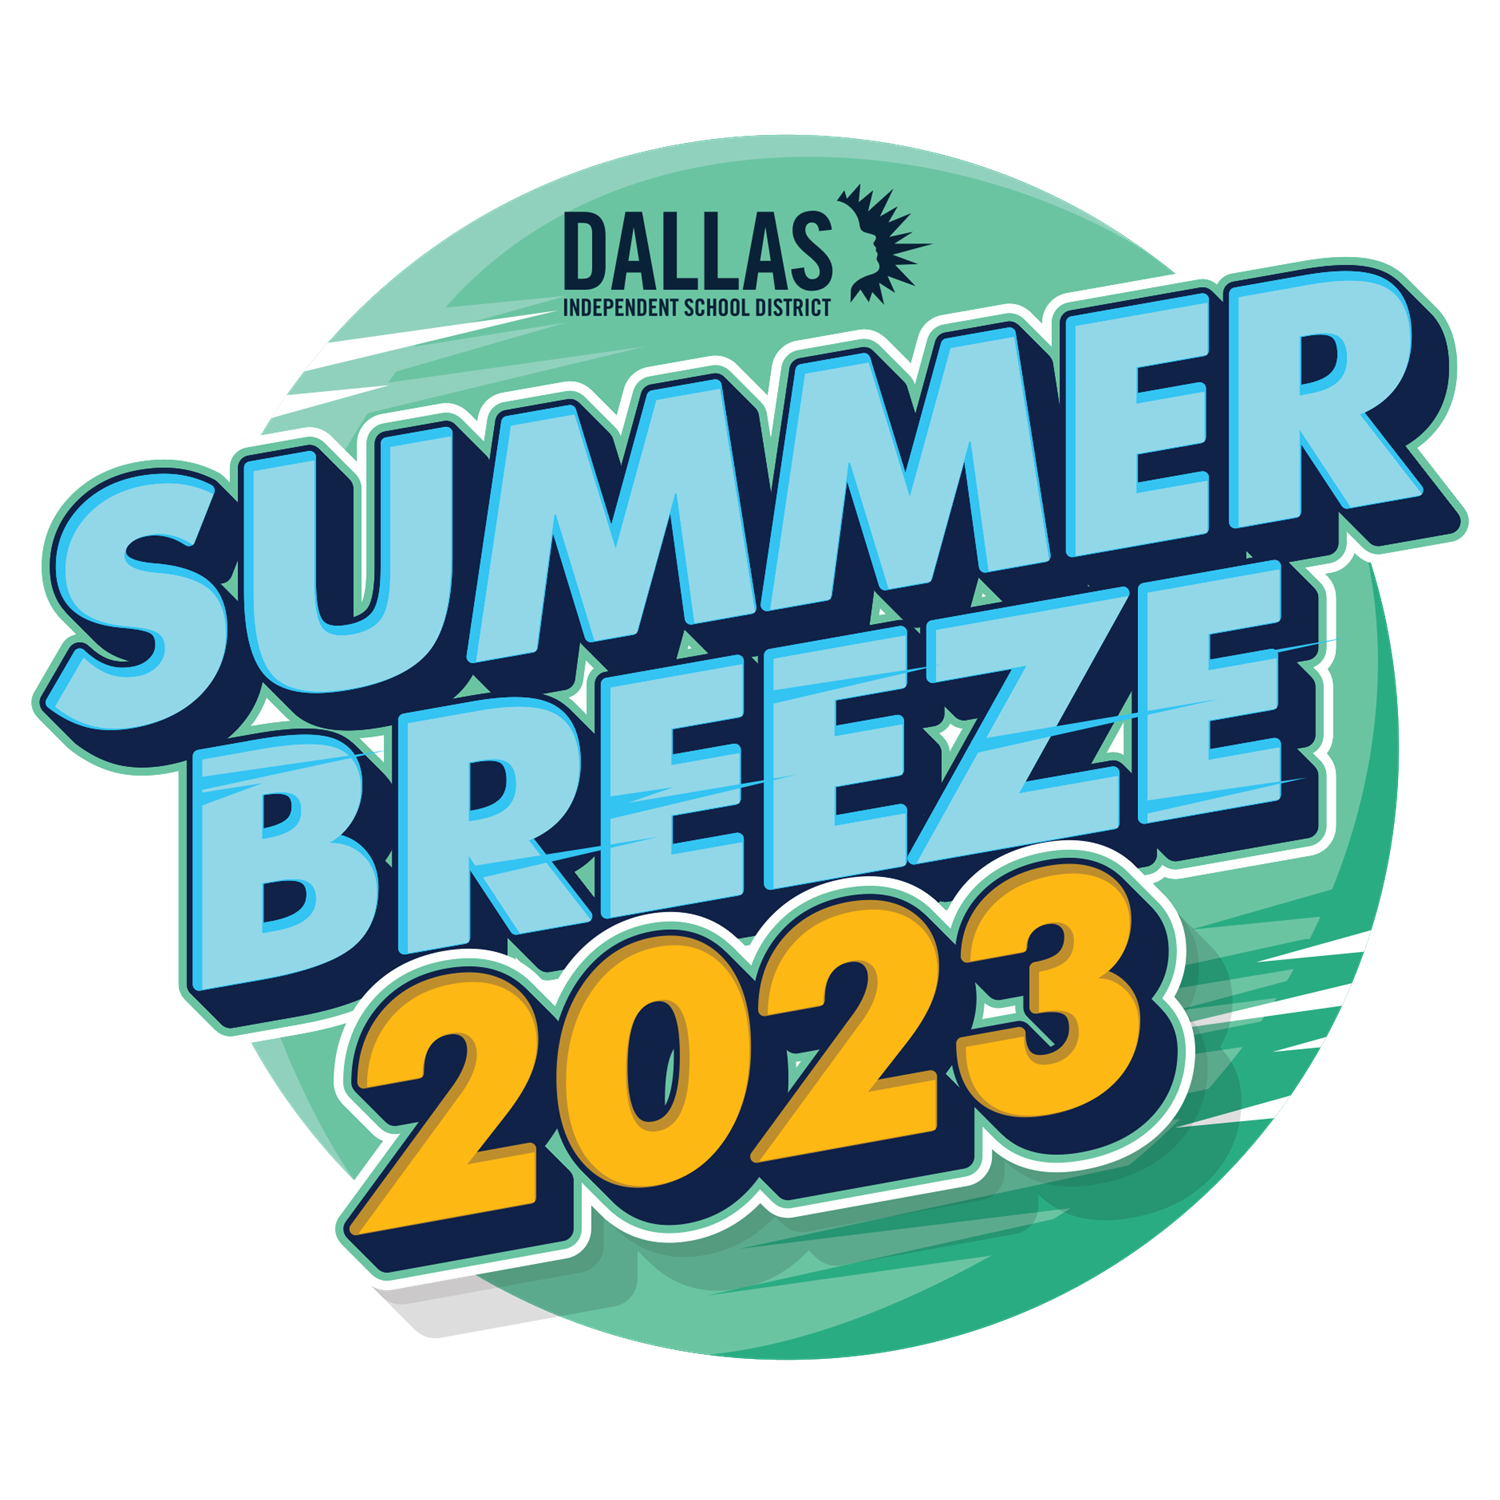 Summer Breeze 2022